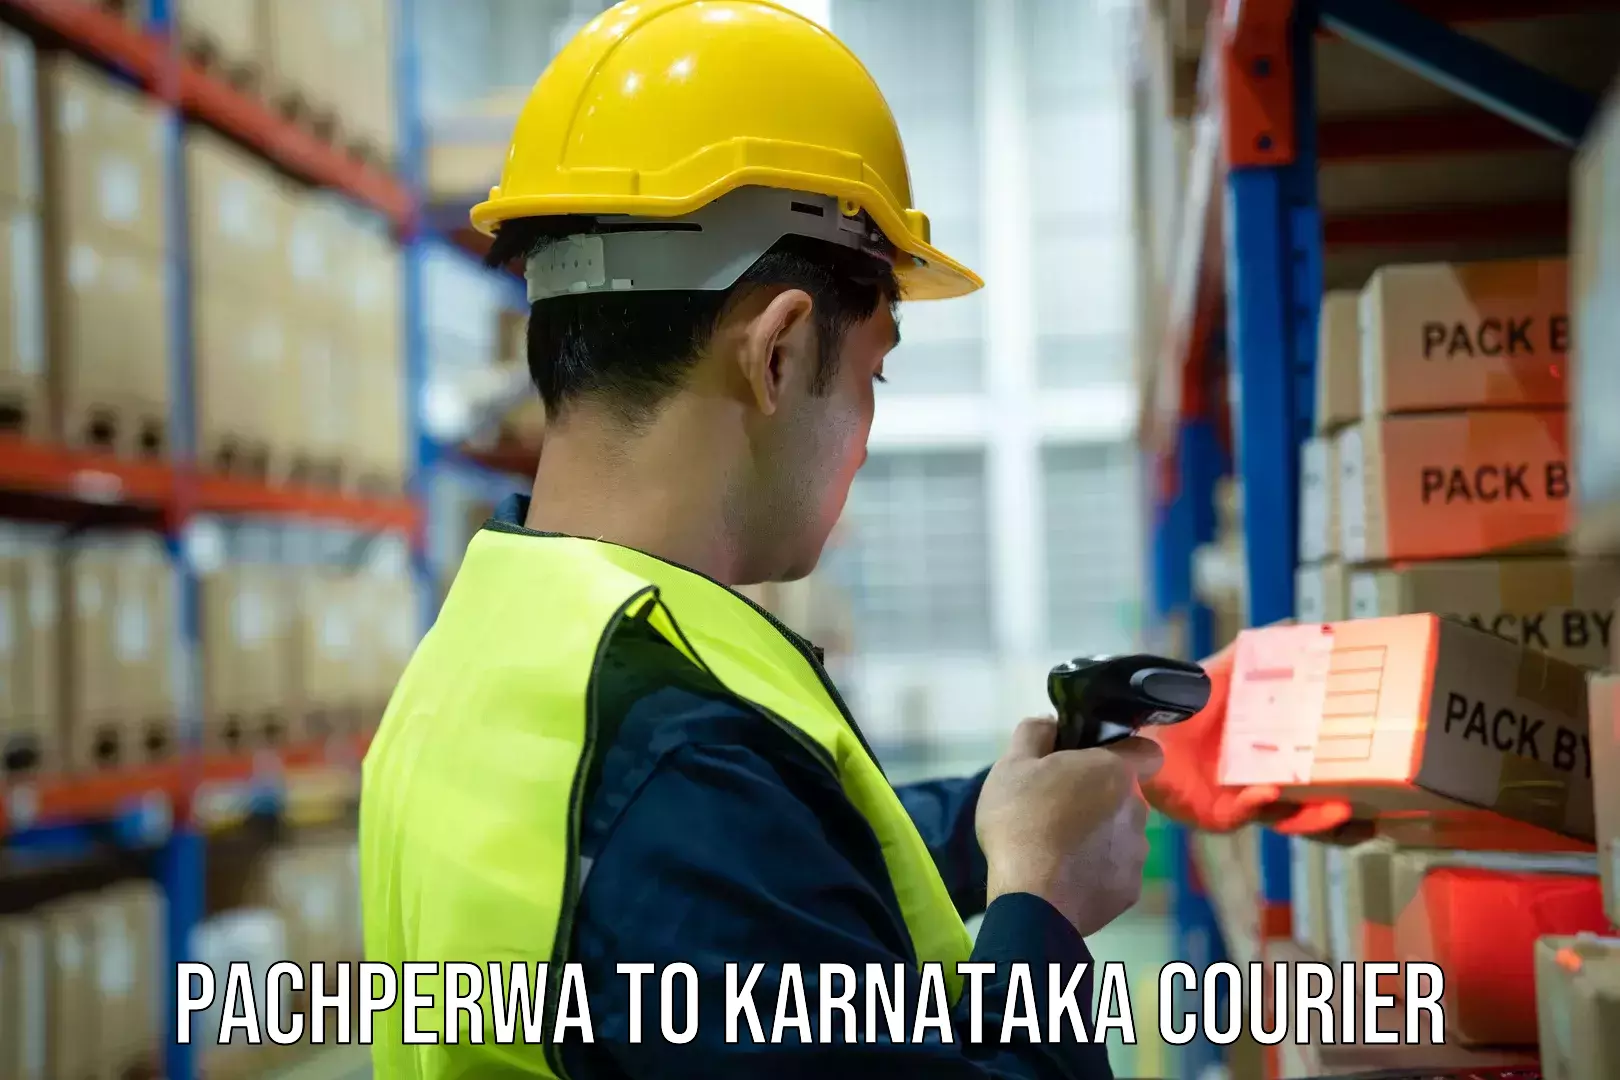 Rapid shipping services Pachperwa to Karnataka